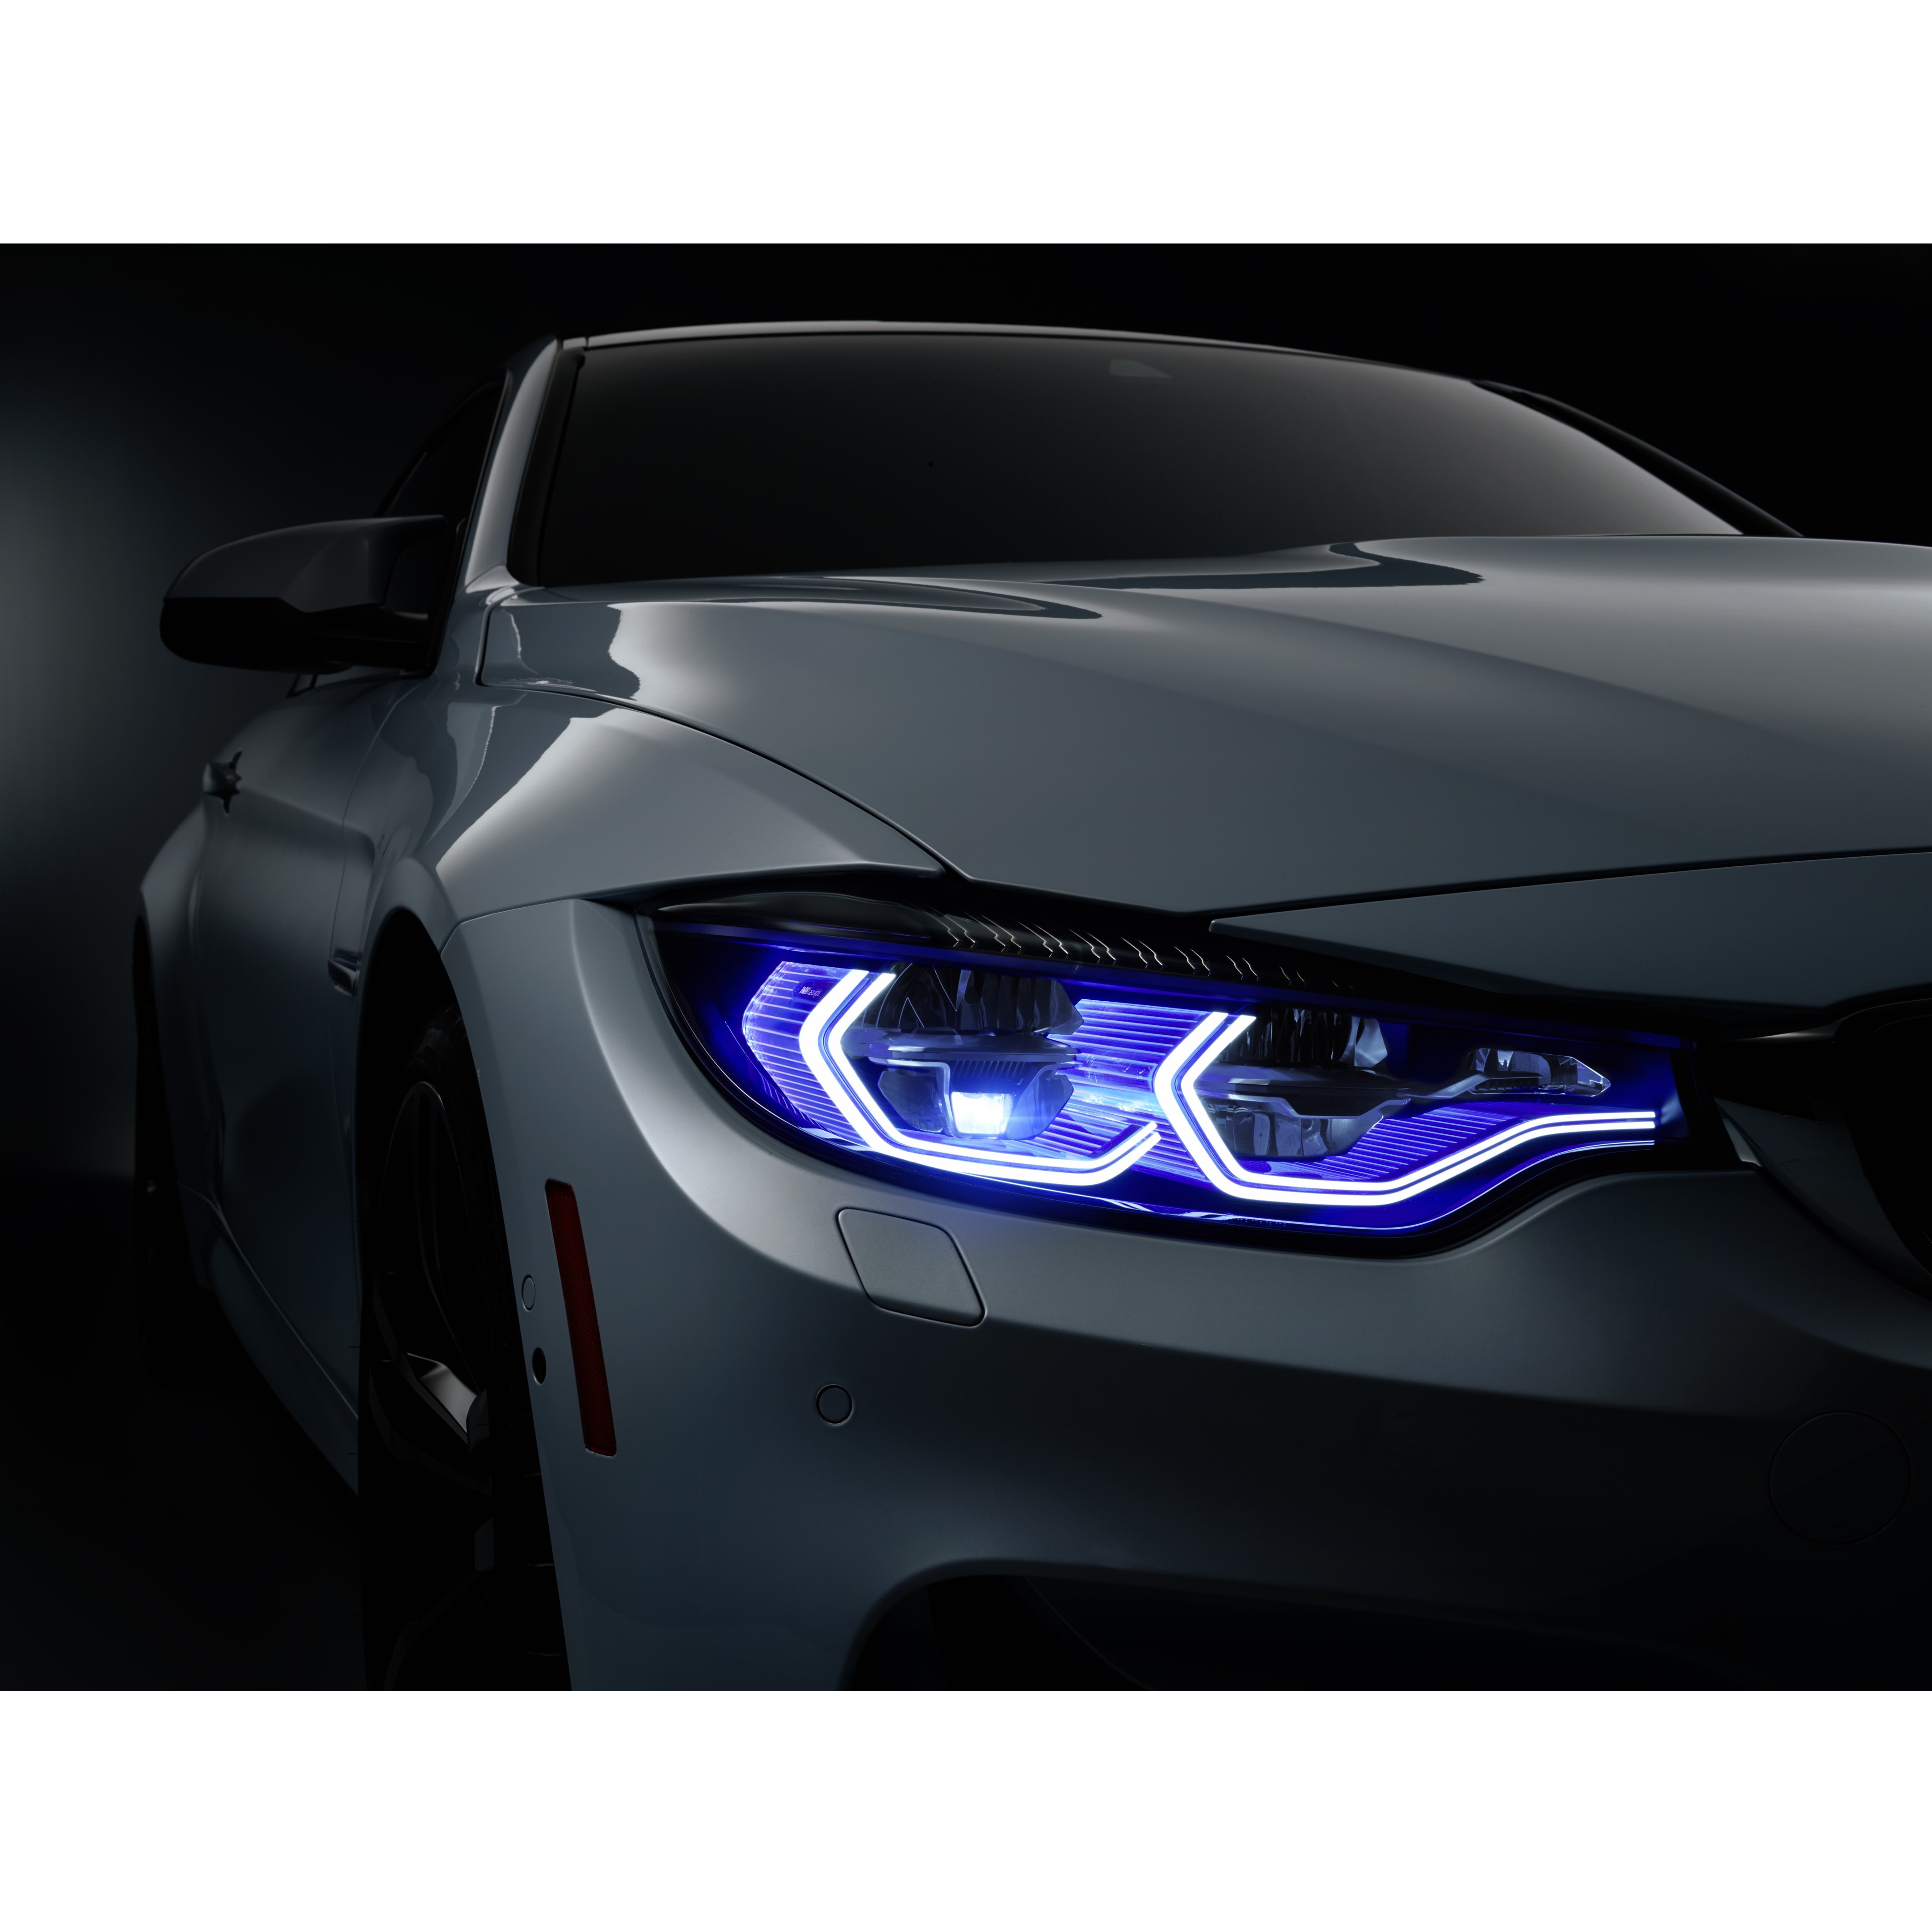 Đèn pha LED ô tô đã trở thành một trong những công nghệ cao cấp được sử dụng trên những chiếc xe hàng đầu. Hãy cùng xem hình ảnh về đèn pha LED ô tô có khả năng tự động điều chỉnh ánh sáng và tùy chỉnh thông qua smartphone. Chúng ta sẽ nhận thấy sự tiên tiến của công nghệ trong ngành sản xuất ô tô.